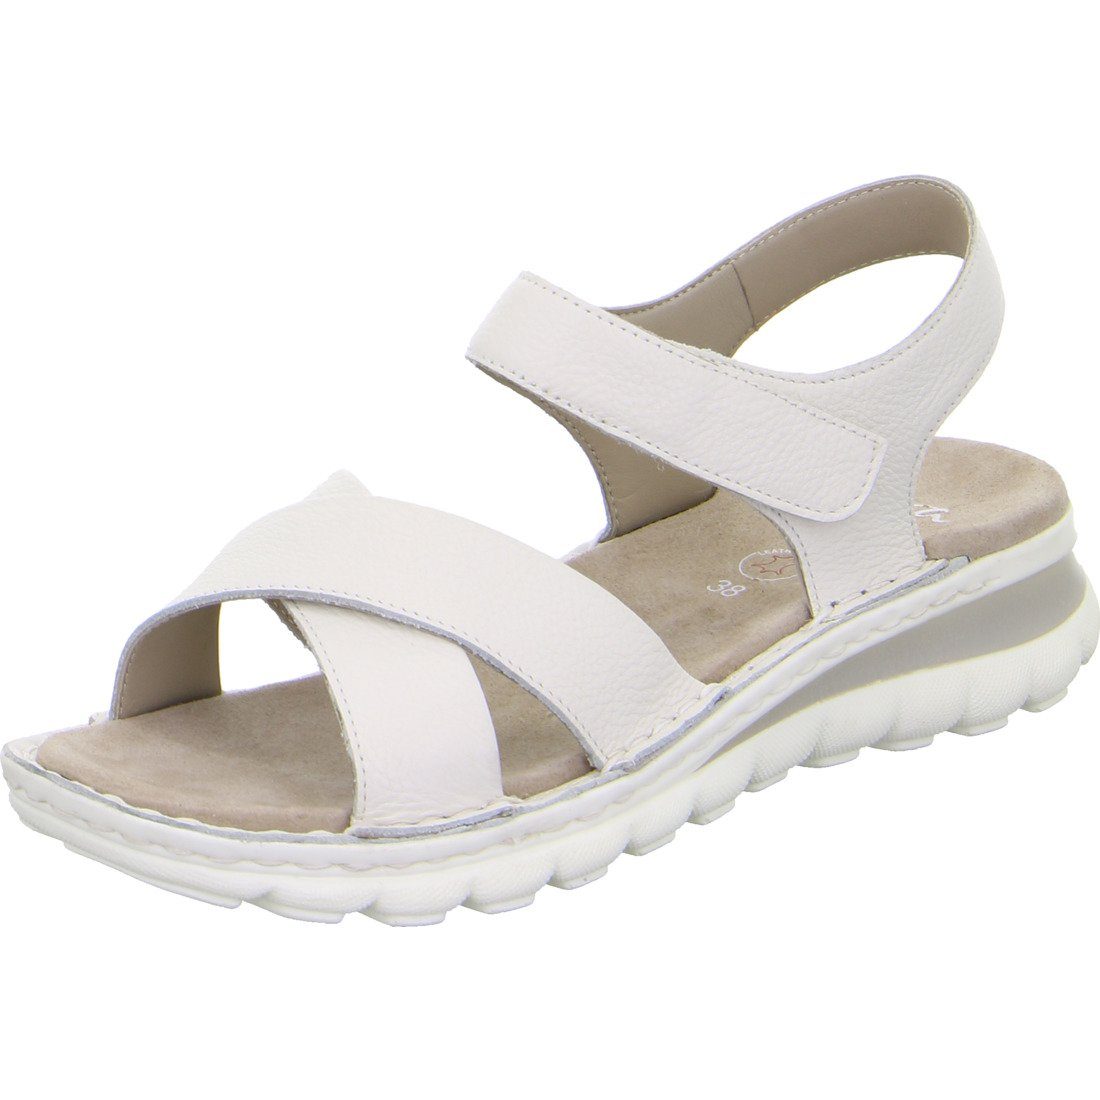 Damen Ara Ara offwhite Tampa Sandalette - Leder Schuhe, 048270 Sandalette